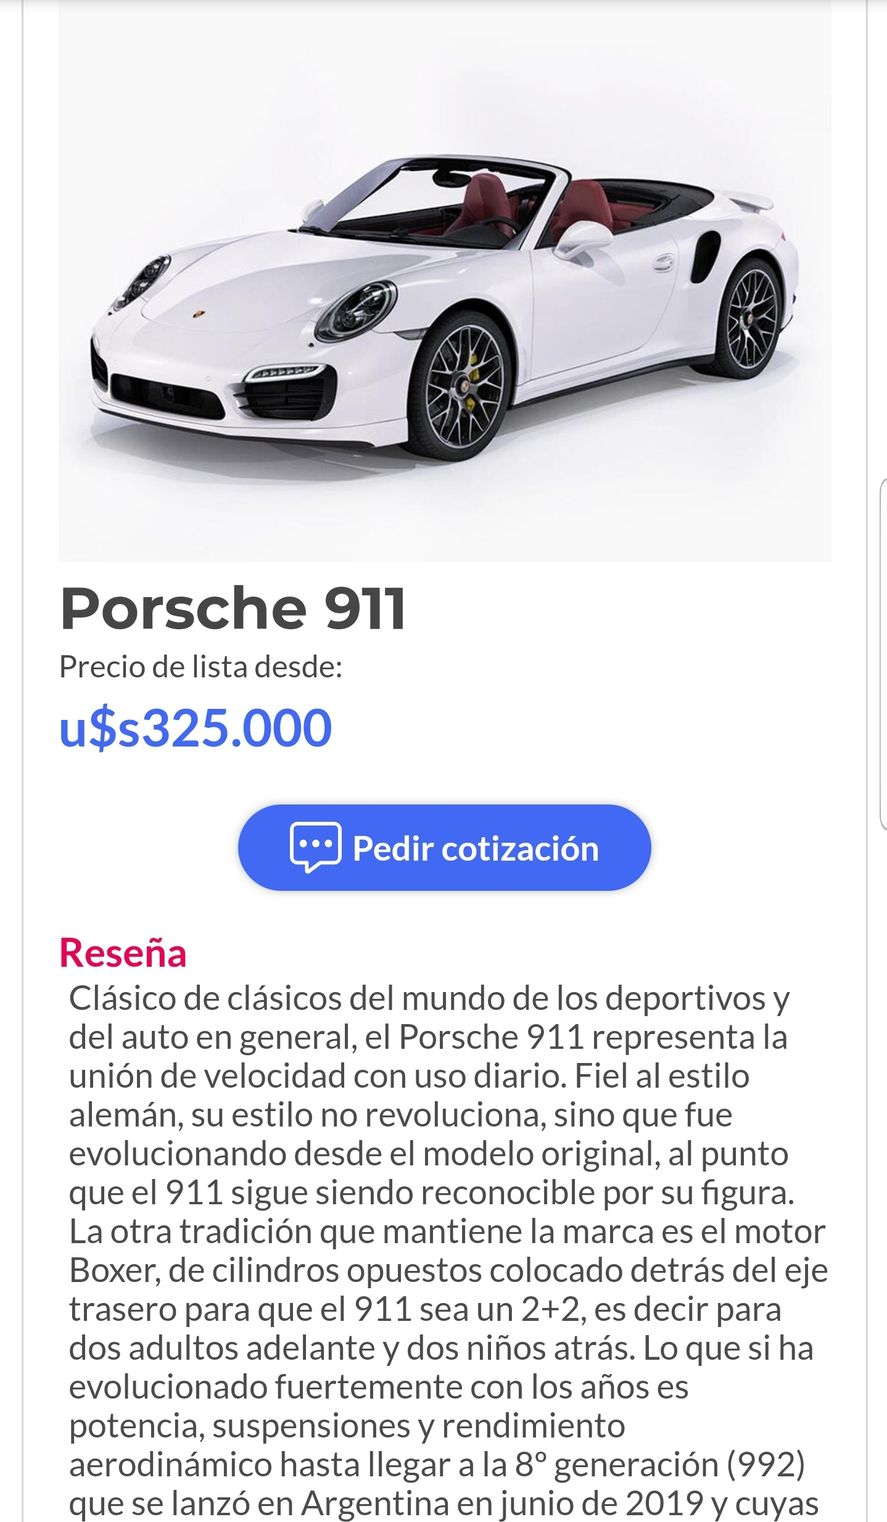 Según se publica en Argentina, un Porsche similar al que se ve en la foto de Baby Etchecopar cuesta 325000 dólares 